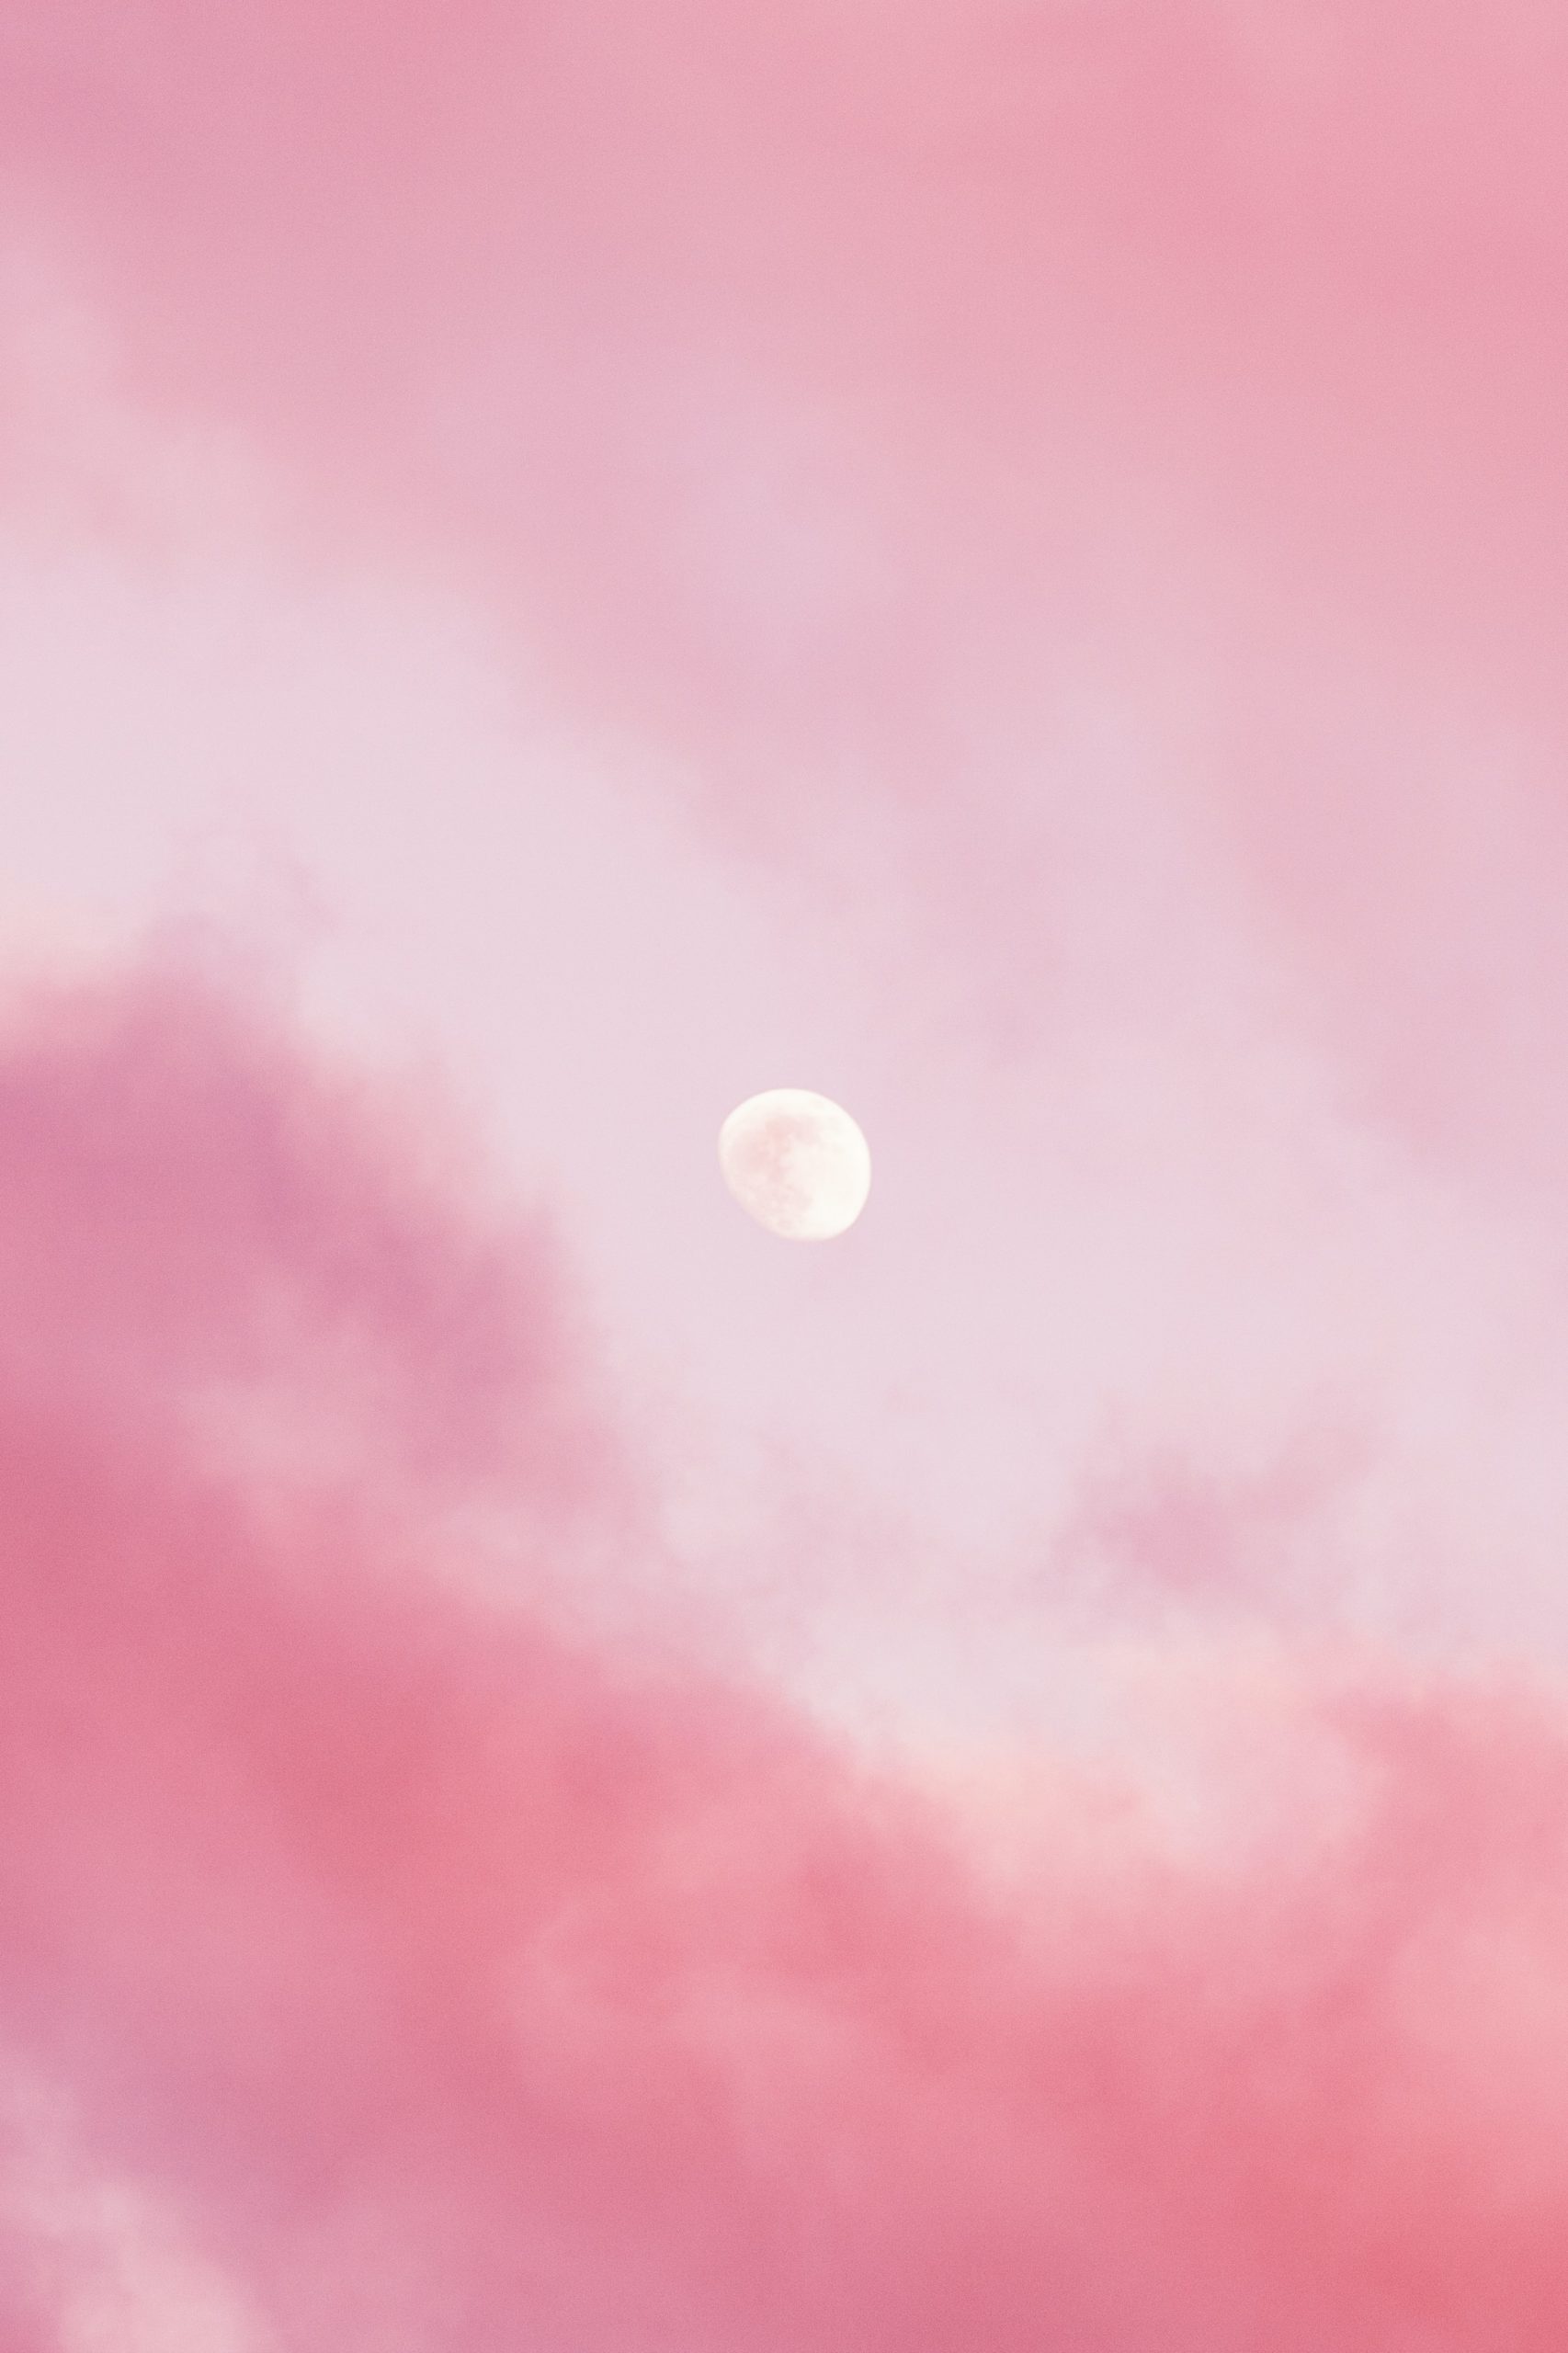 Chia sẻ nhiều hơn 106 bầu trời hình nền cute màu hồng tuyệt vời nhất   thdonghoadian